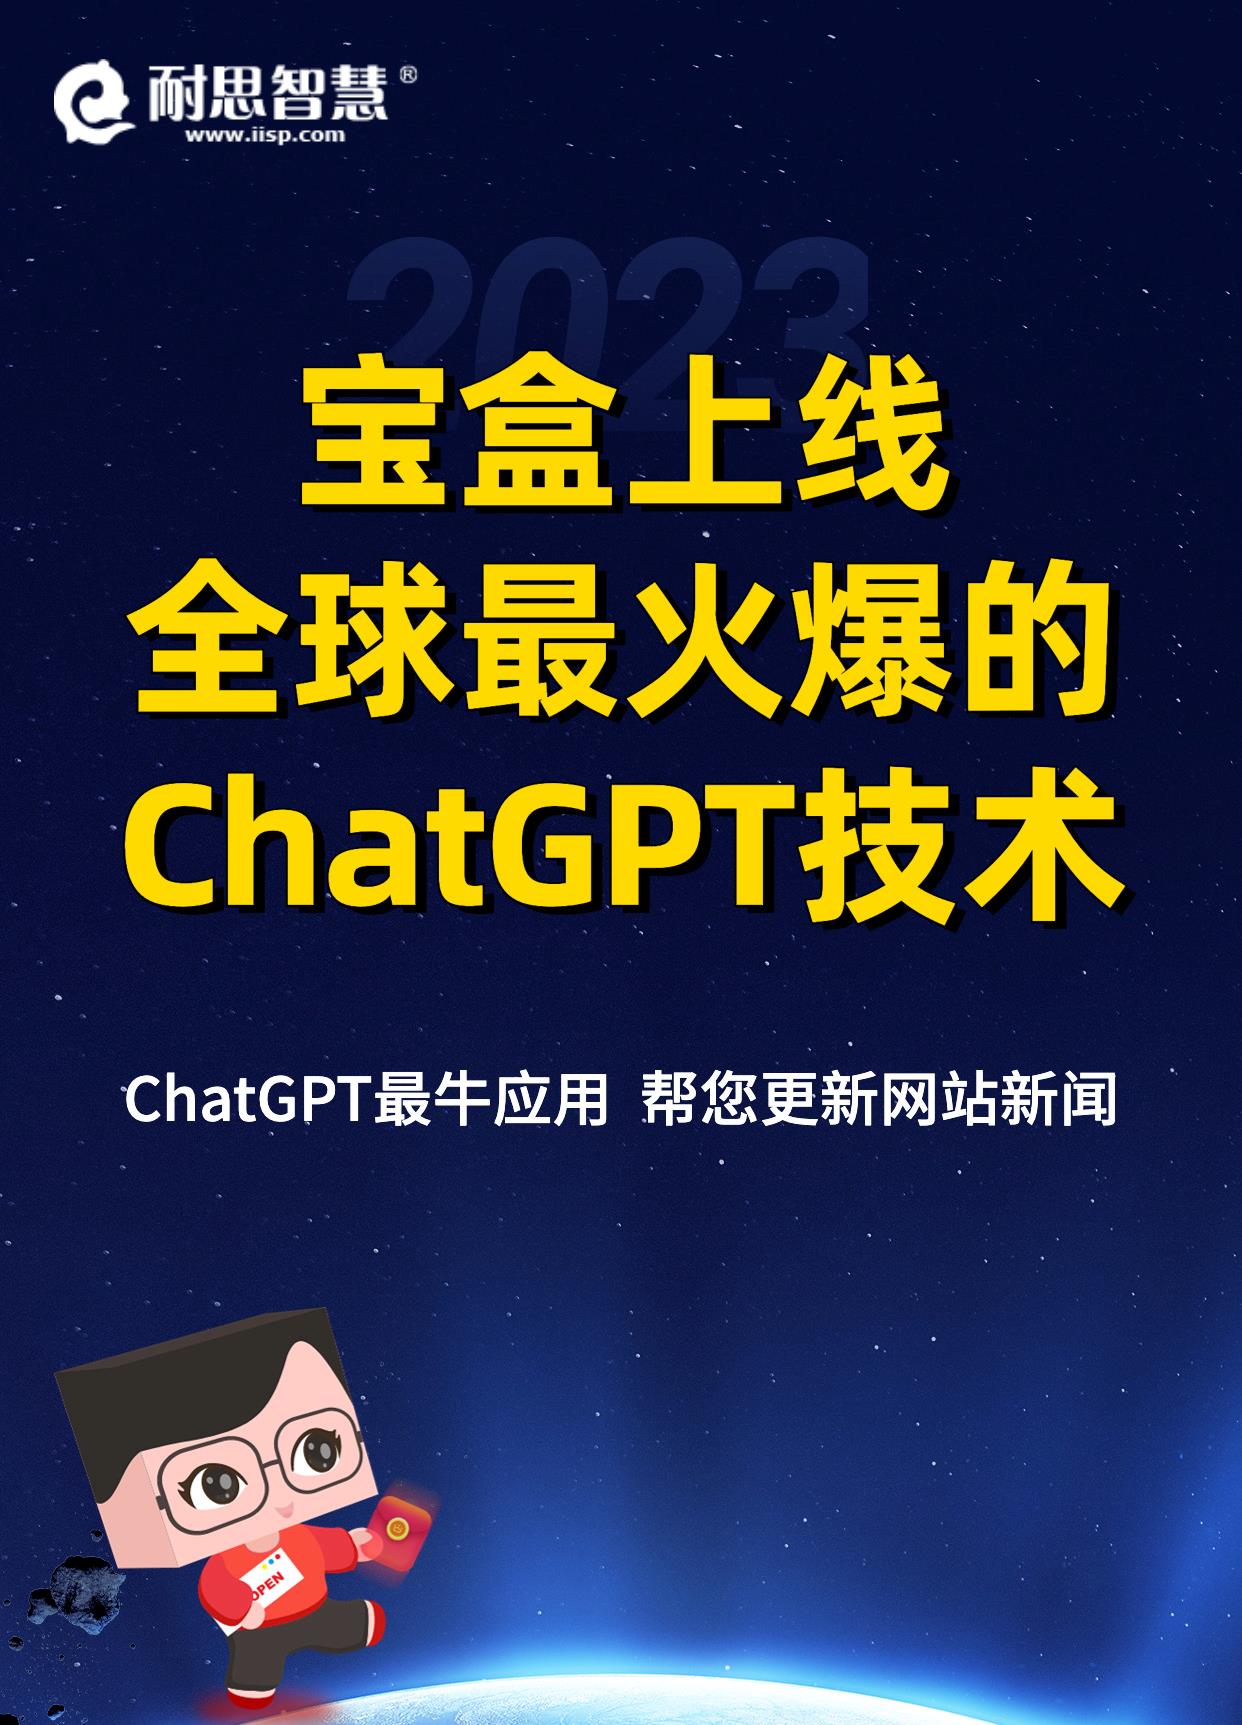 宝盒成功上线全球最火爆的ChatGPT技术！